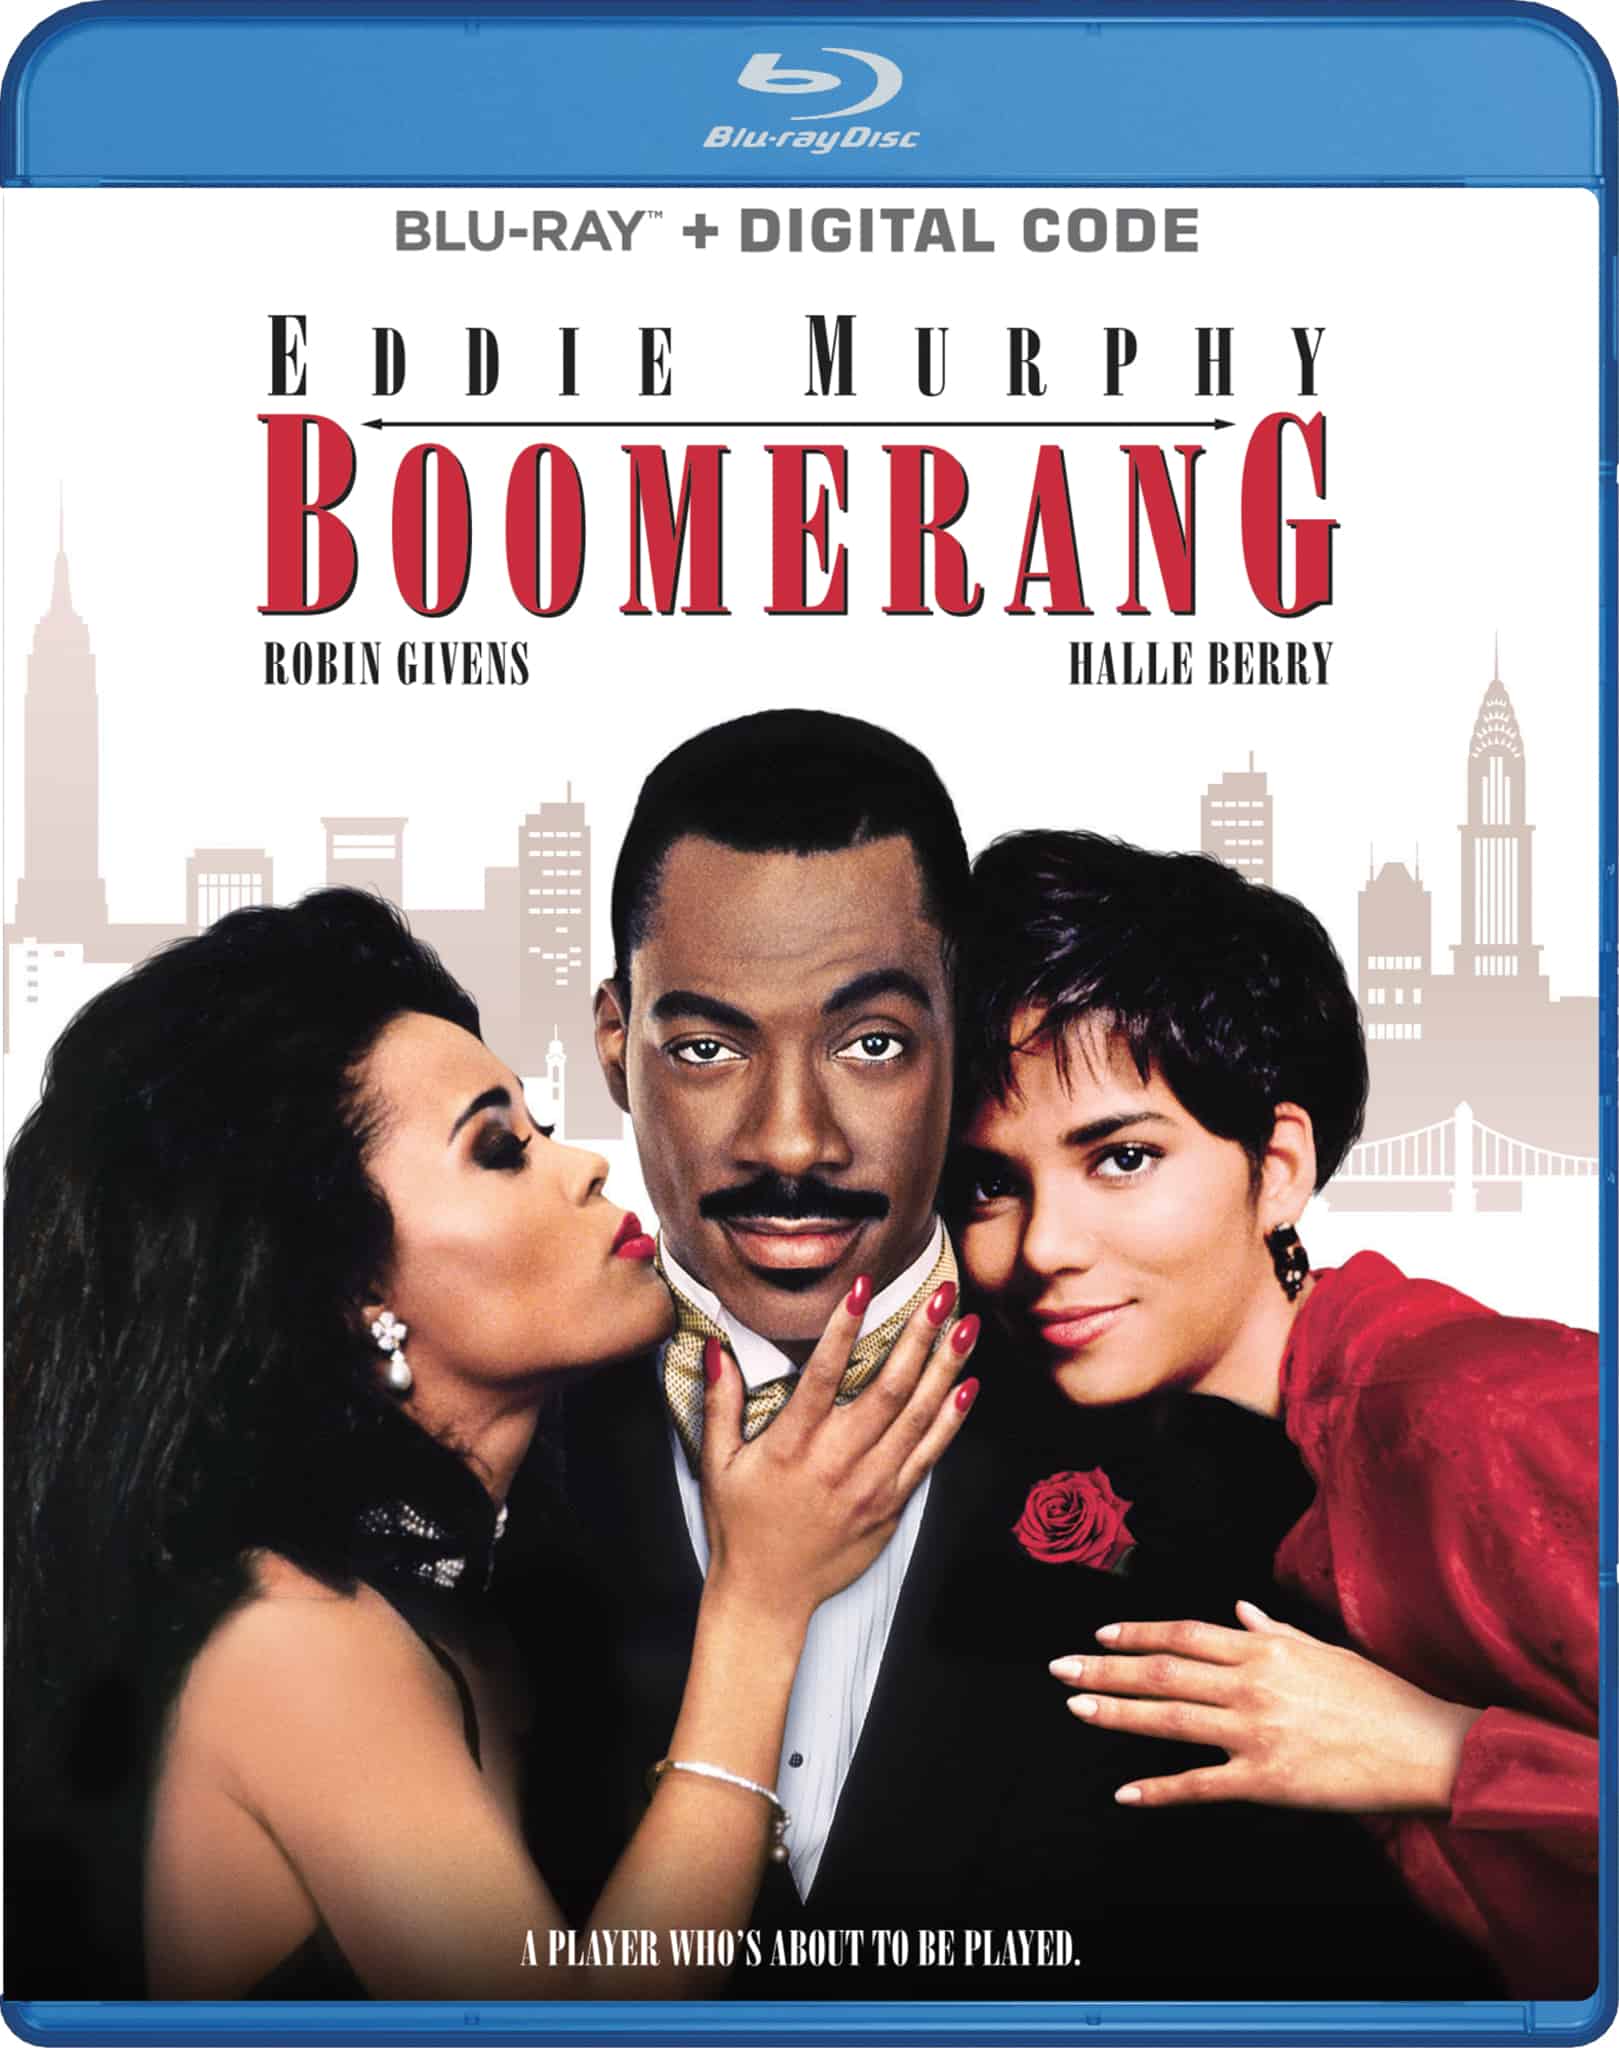 Boomerang debuts Blu-ray